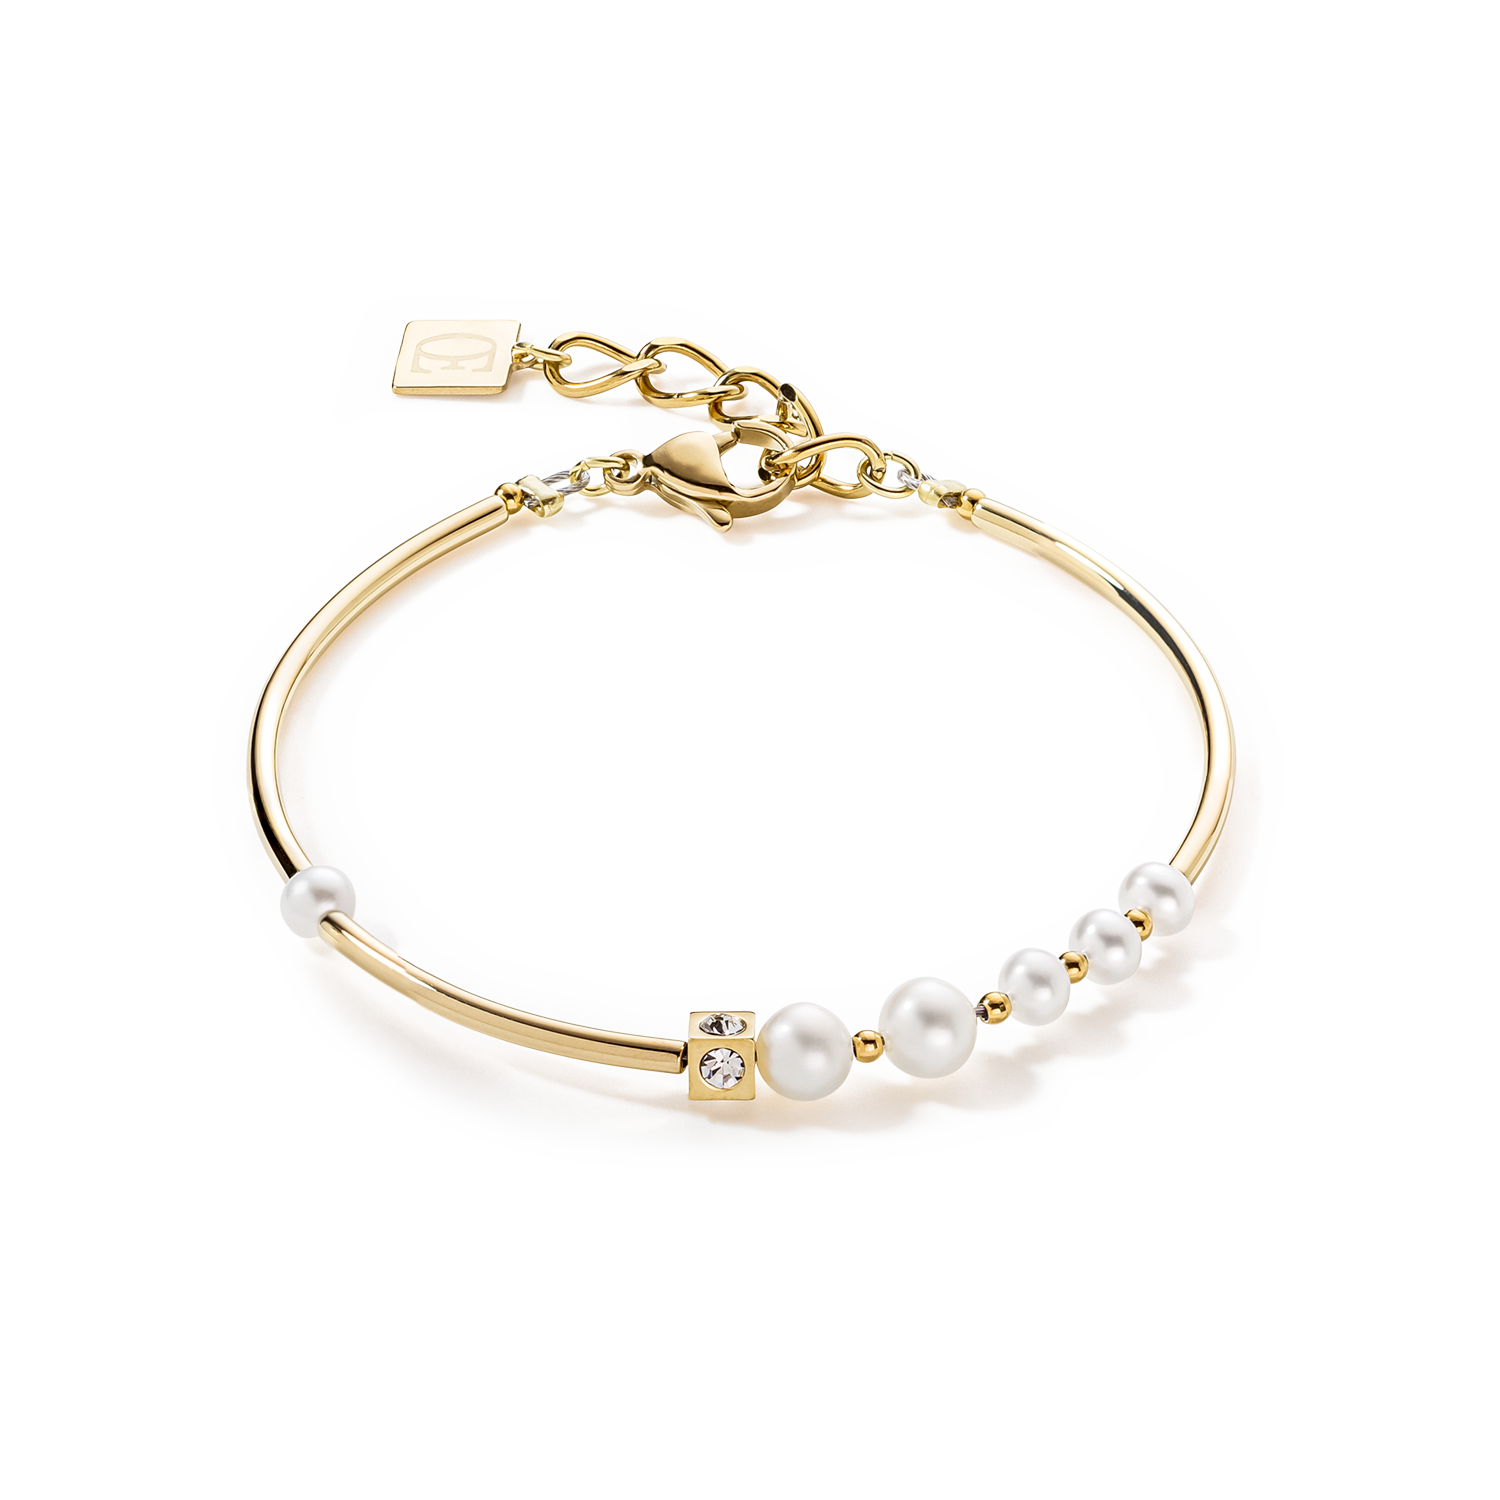 Bracelet Asymmetry Freshwater Pearls & stainless steel white-gold ...